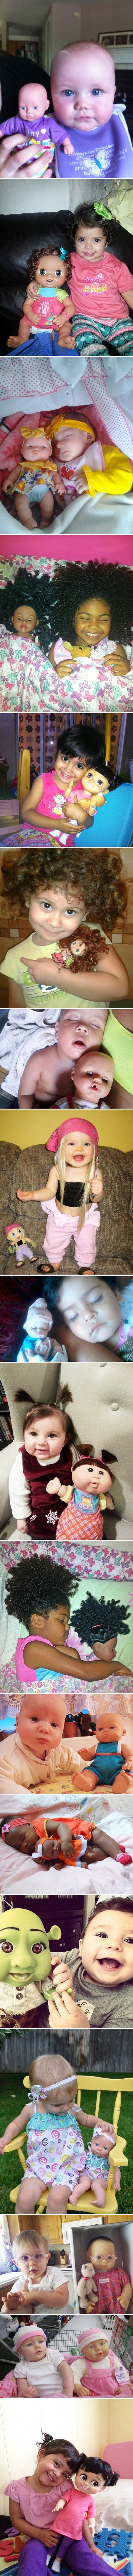 NEVJEROJATNA SLIČNOST Ove bebe i njihove lutke izgledaju potpuno jednako!